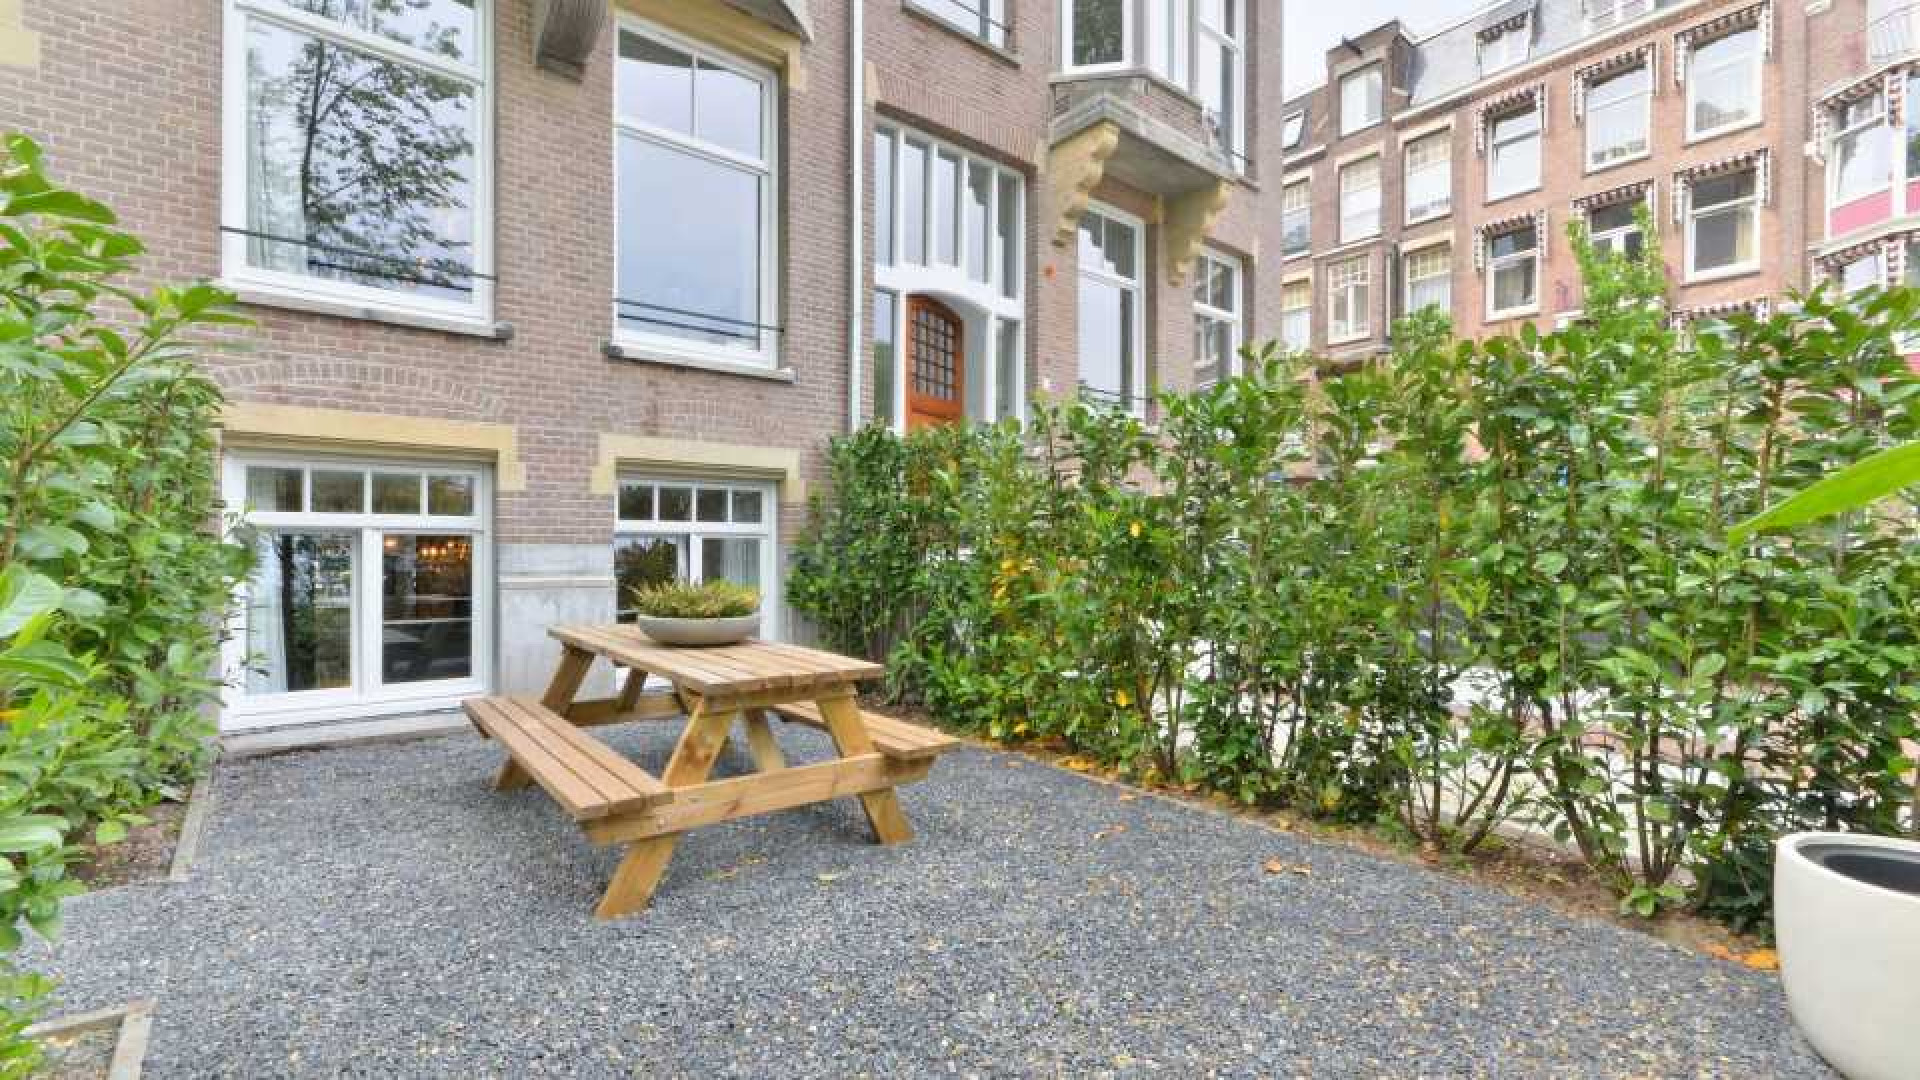 Hart van Nederland presentatrice Gallyon van Vessem verkoopt haar pand In Amsterdam Zuid in recordtijd. Zie foto's 20